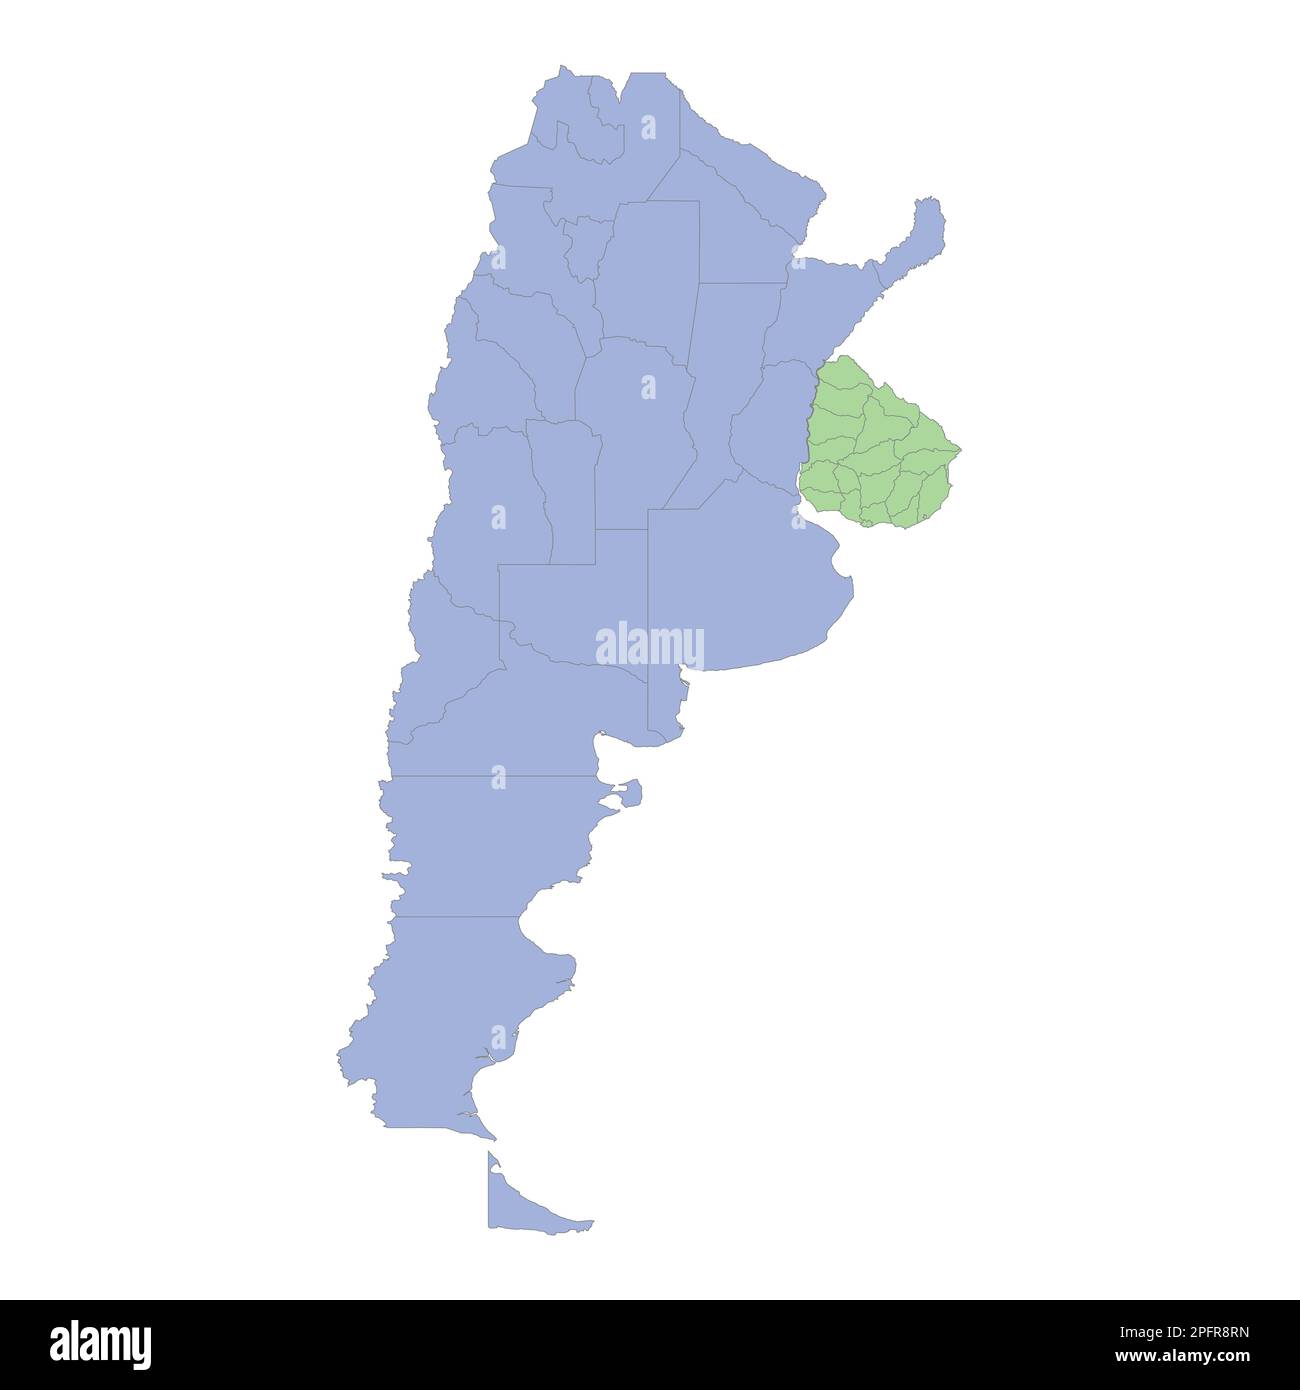 Mappa politica di alta qualità di Argentina e Uruguay con i confini delle regioni o province. Illustrazione vettoriale Illustrazione Vettoriale